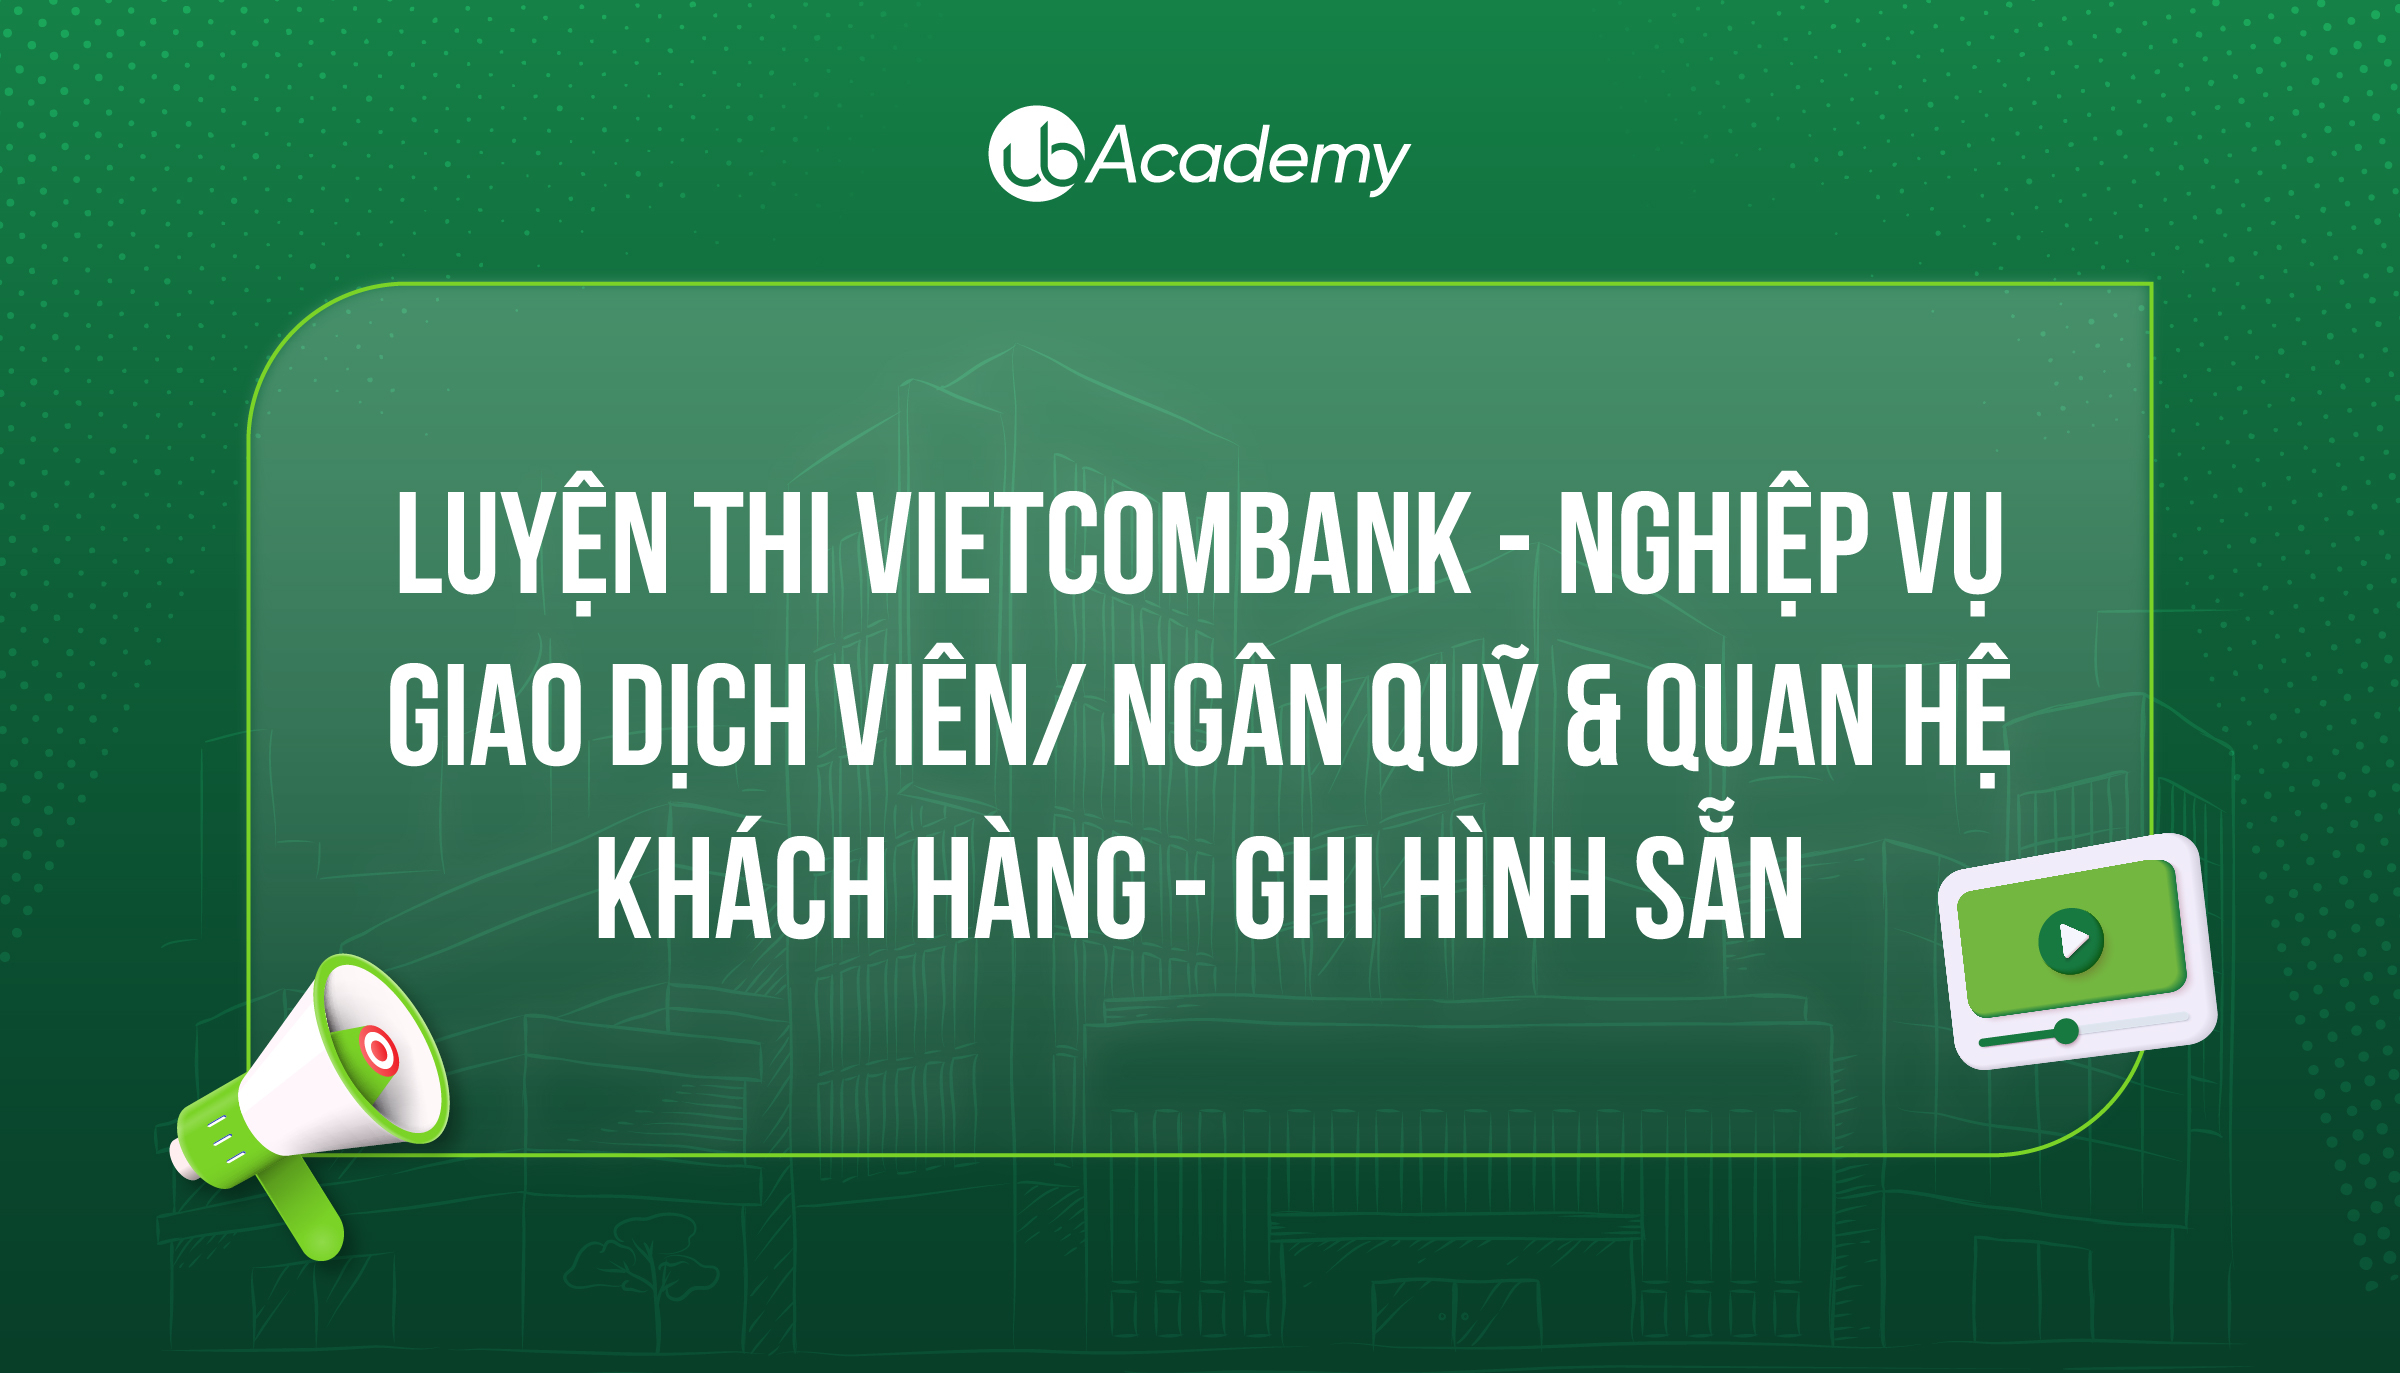 Luyện thi Vietcombank - Nghiệp vụ - Giao dịch viên/ Ngân quỹ & Quan hệ Khách hàng - Ghi hình sẵn